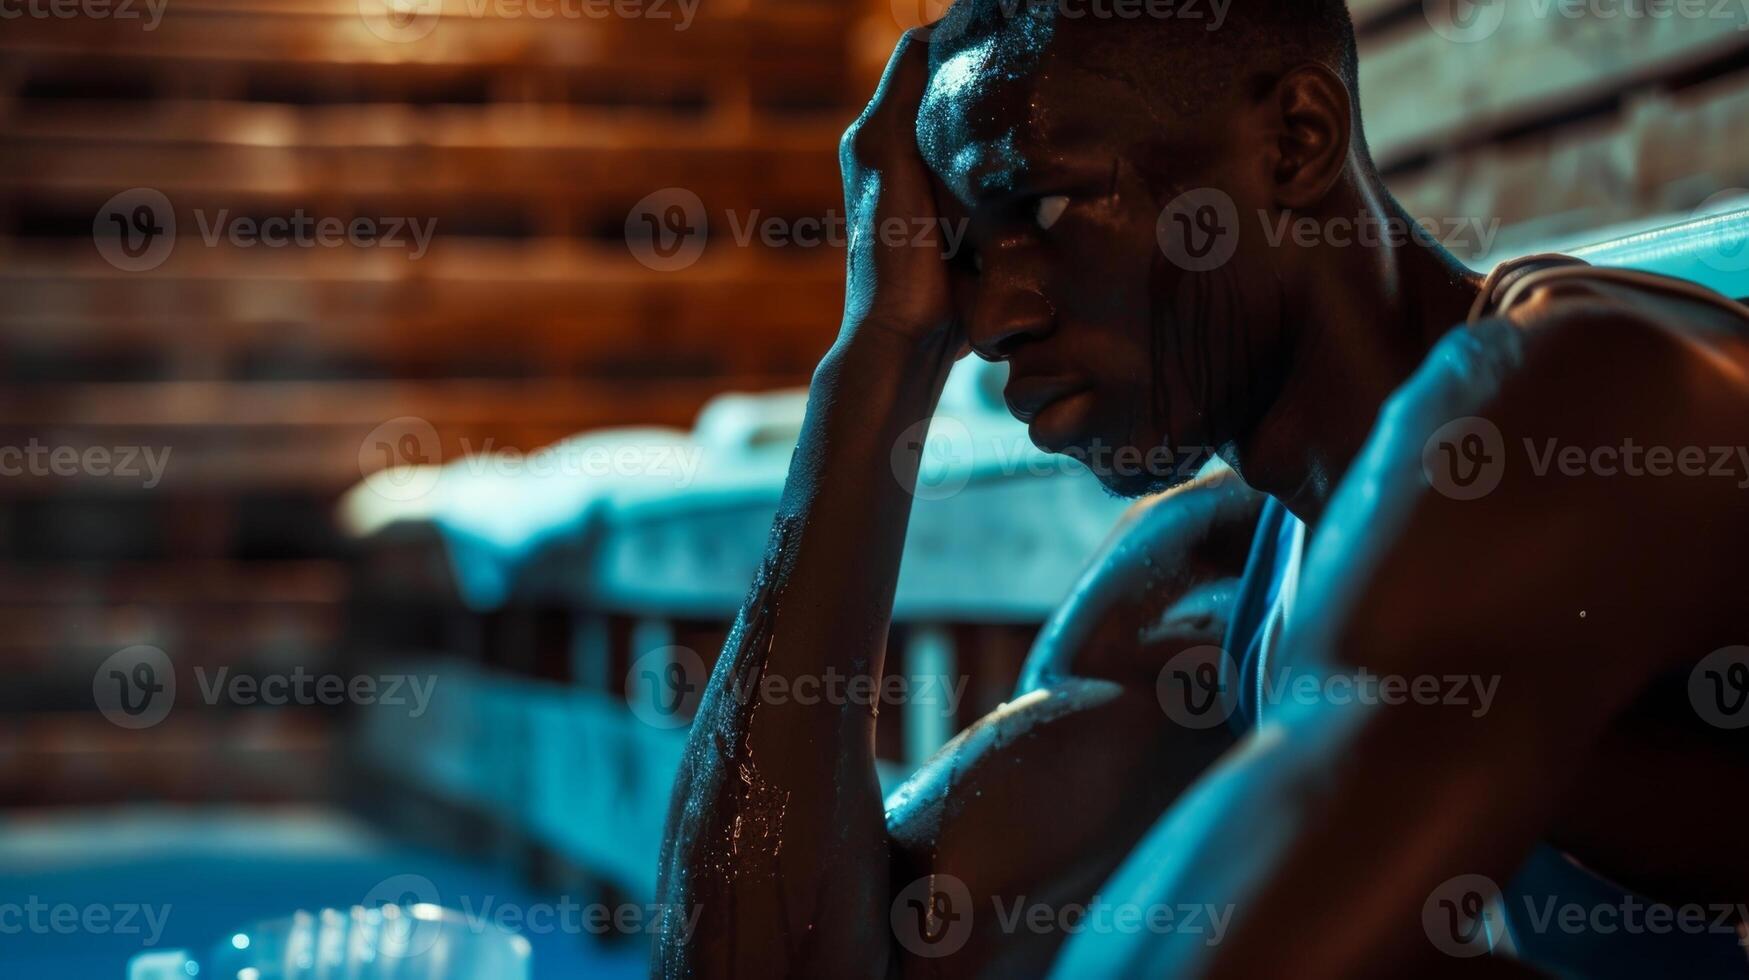 en basketboll spelare sitter i en bastu hans hand gripande en vatten flaska som han mentalt förbereder för en ansträngande turnering ett huvud. foto